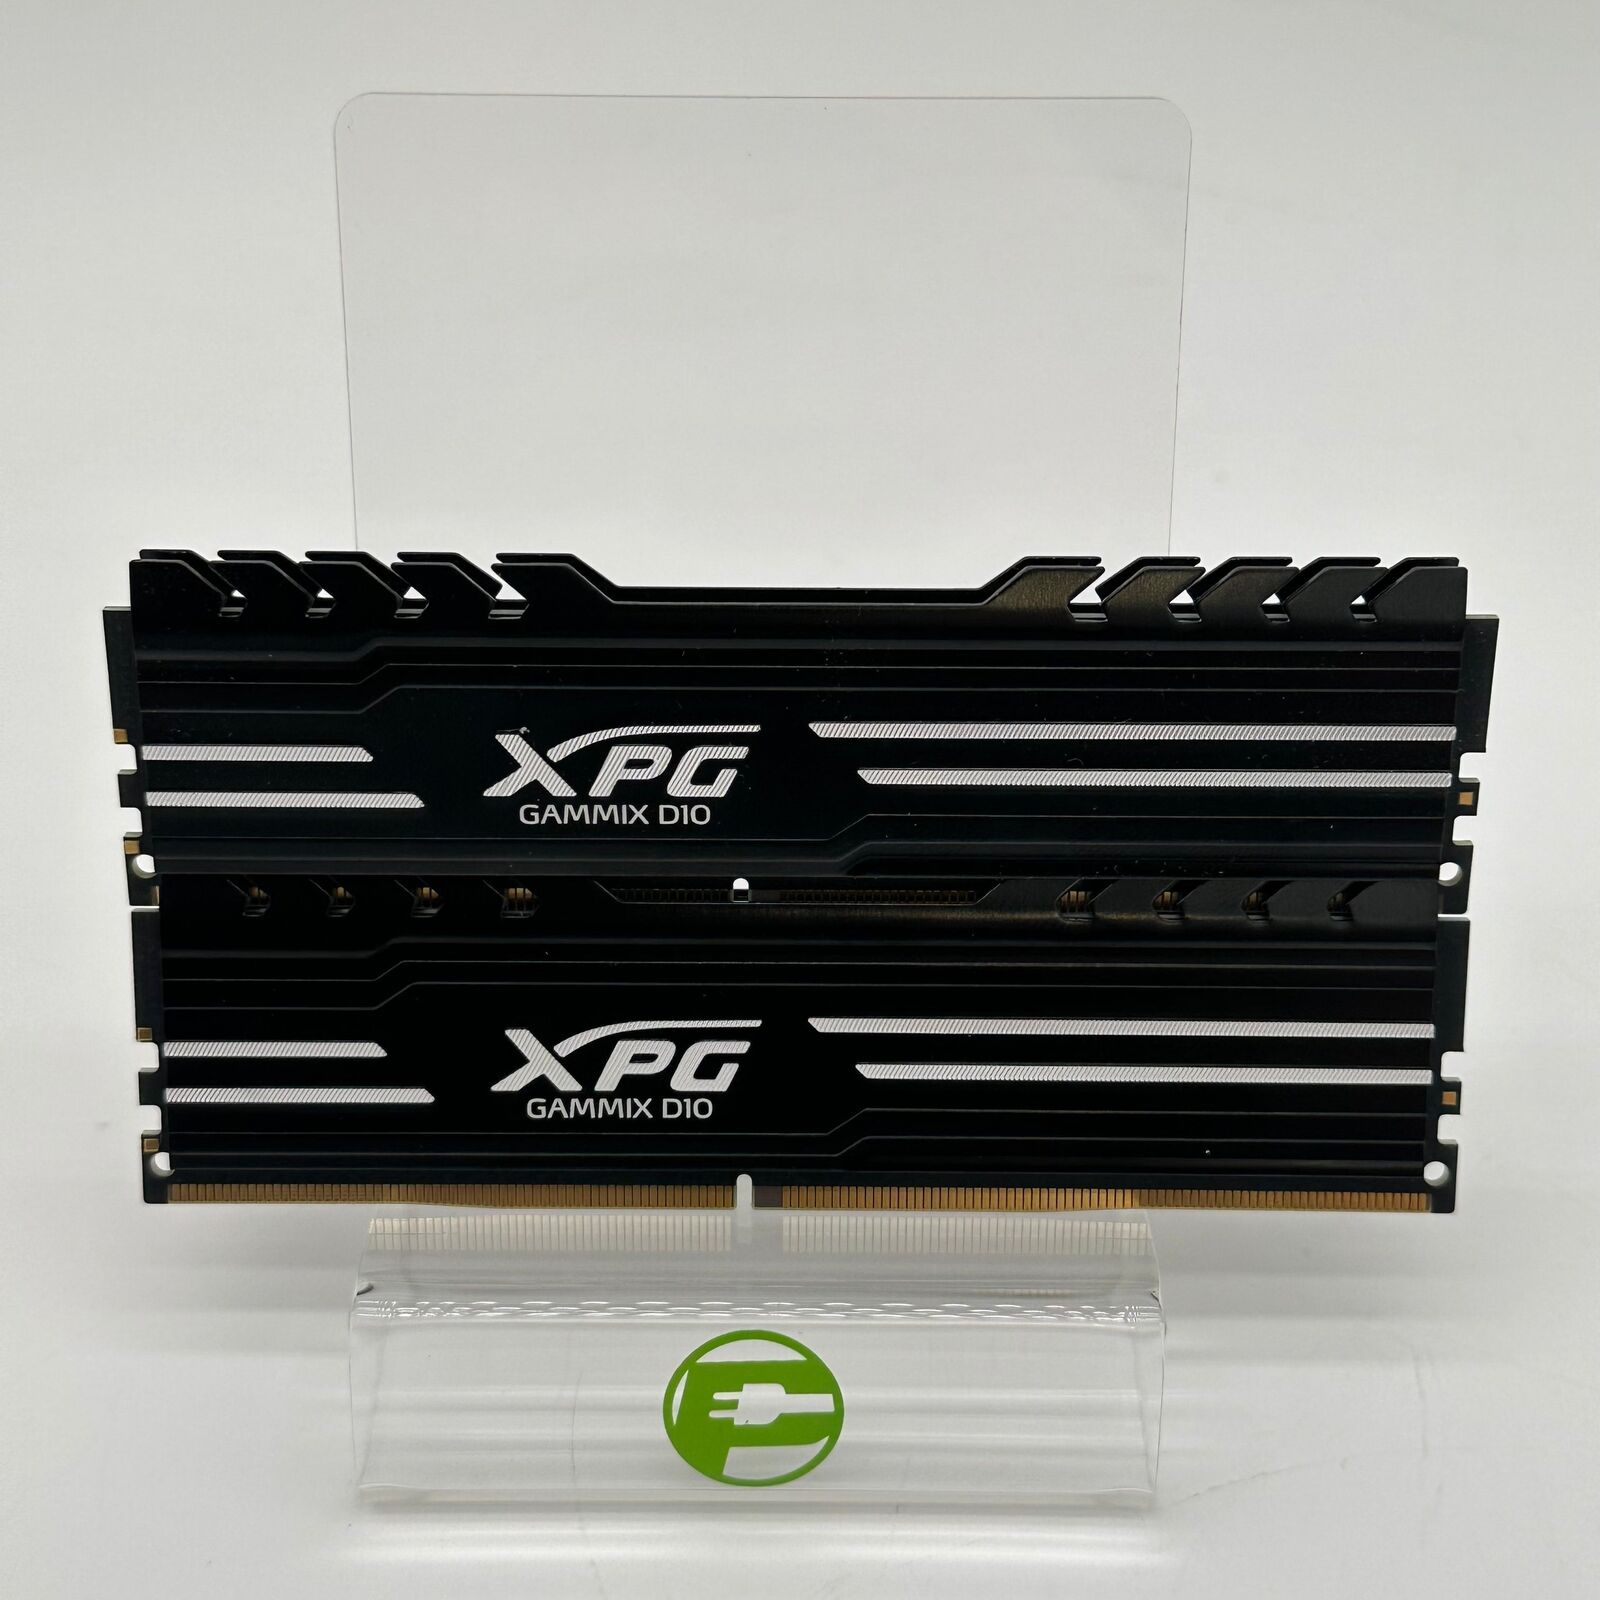 XPG GAMMIX D10 16GB (2x8GB) DDR4 3000MHz AX4U300038G16A RAM